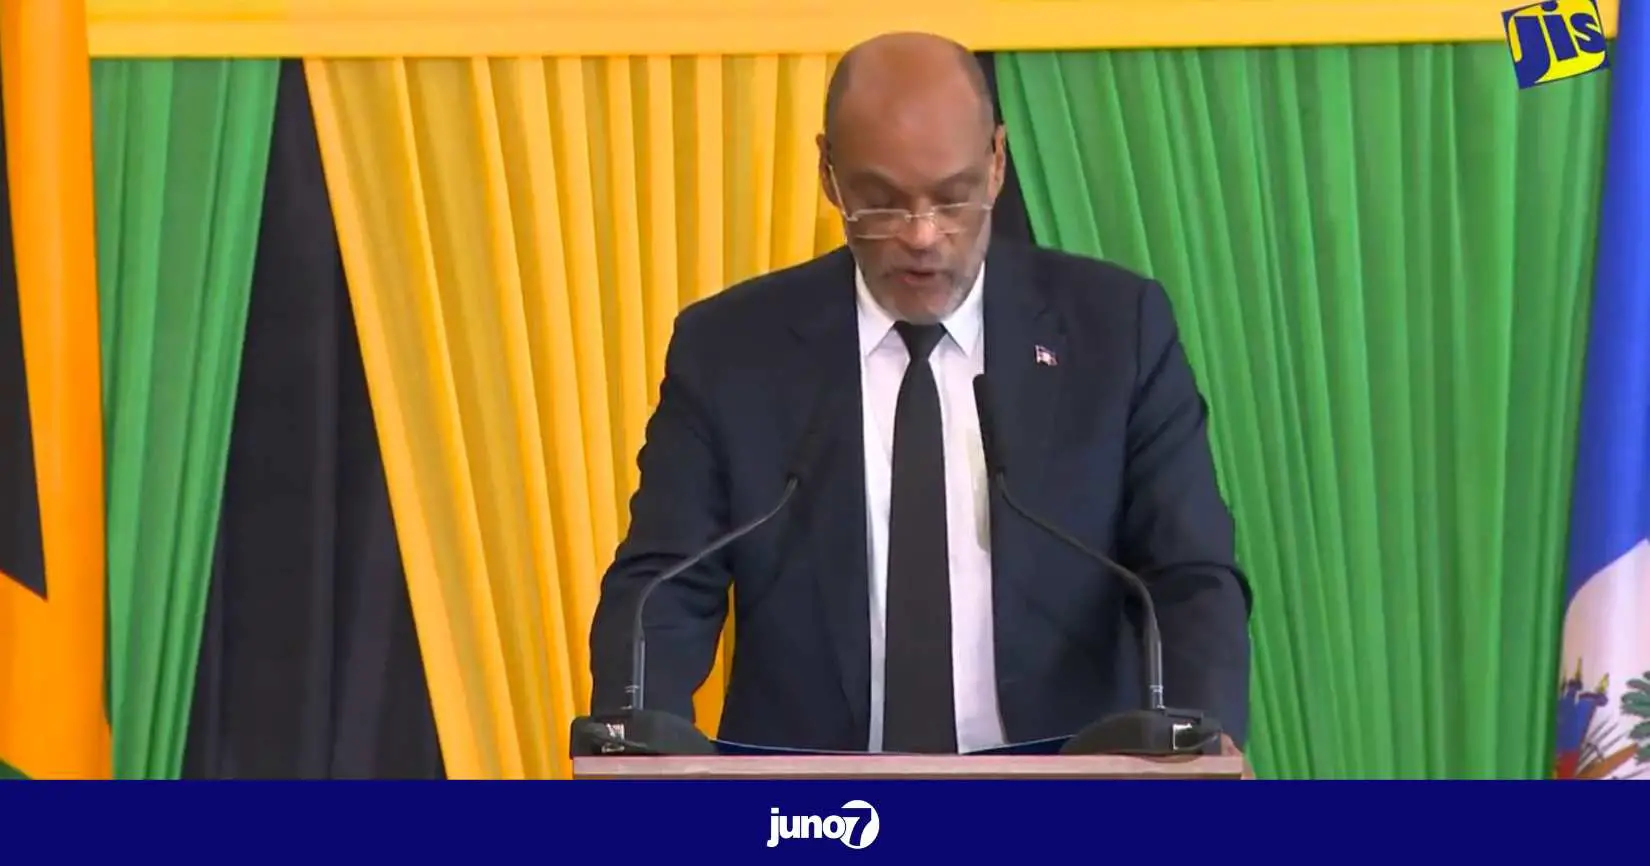 Conférence Jamaïque: Ariel Henry ne veut pas de diktats ni d'un nouvel accord, la CARICOM dit vouloir une solution haïtienne